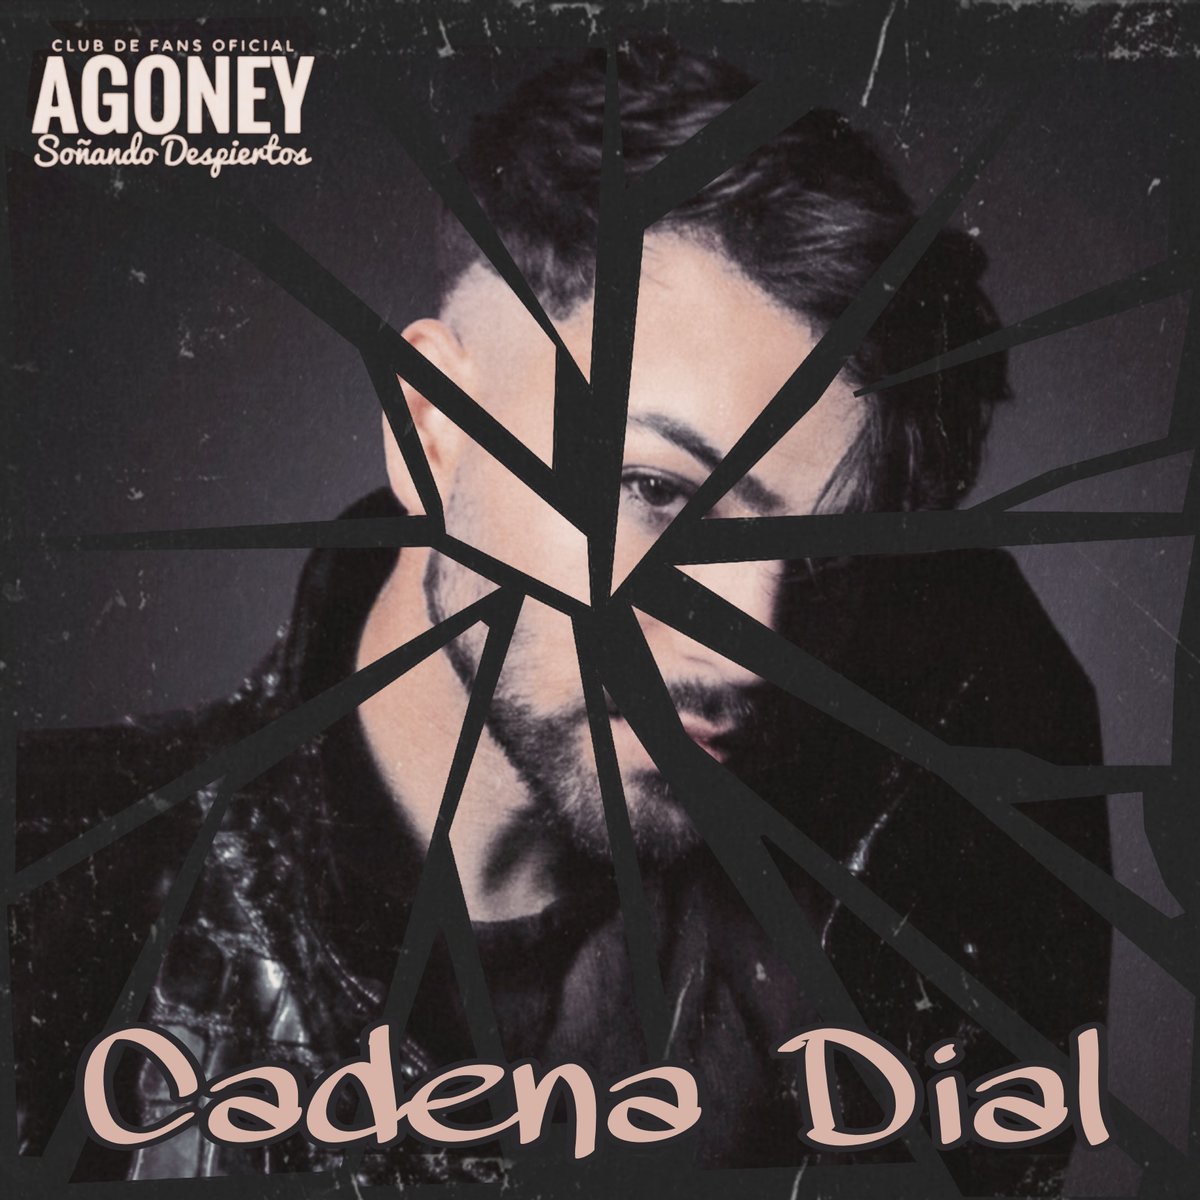 🟢 Hola amigxs de @Cadena_Dial ¿Qué os parece el nuevo tema de Agoney? 
Nos encantaría que la música de @Agoney sonara en la emisora y fuera a presentar TORMENTA en @Cadena_Dial  ¿Qué pensáis?  #LaMusicaQueNosUne #EscuchoDialTalCual